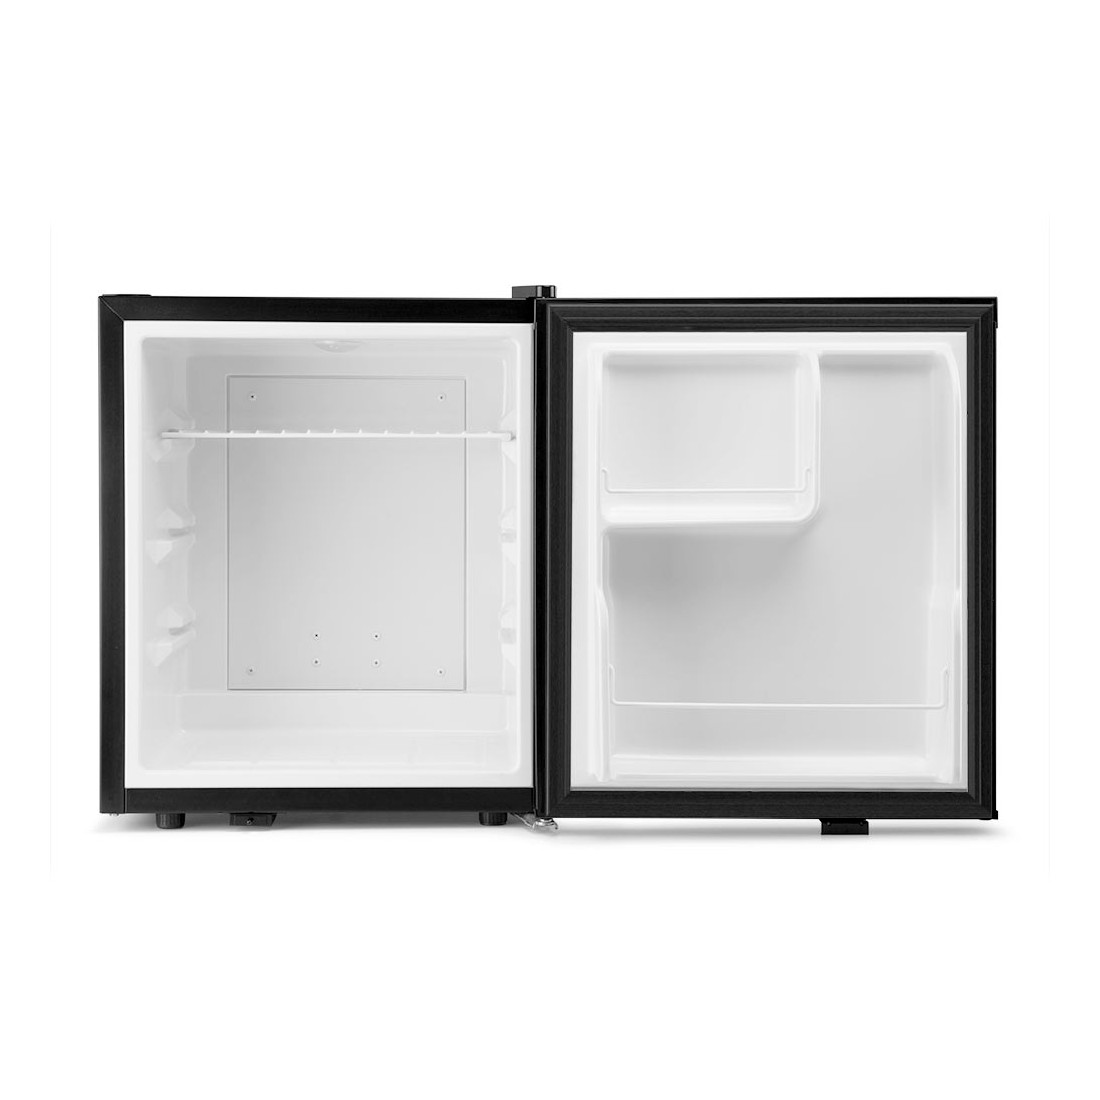 4 frigoríficos pequeños de bajo consumo para completar tu cocina